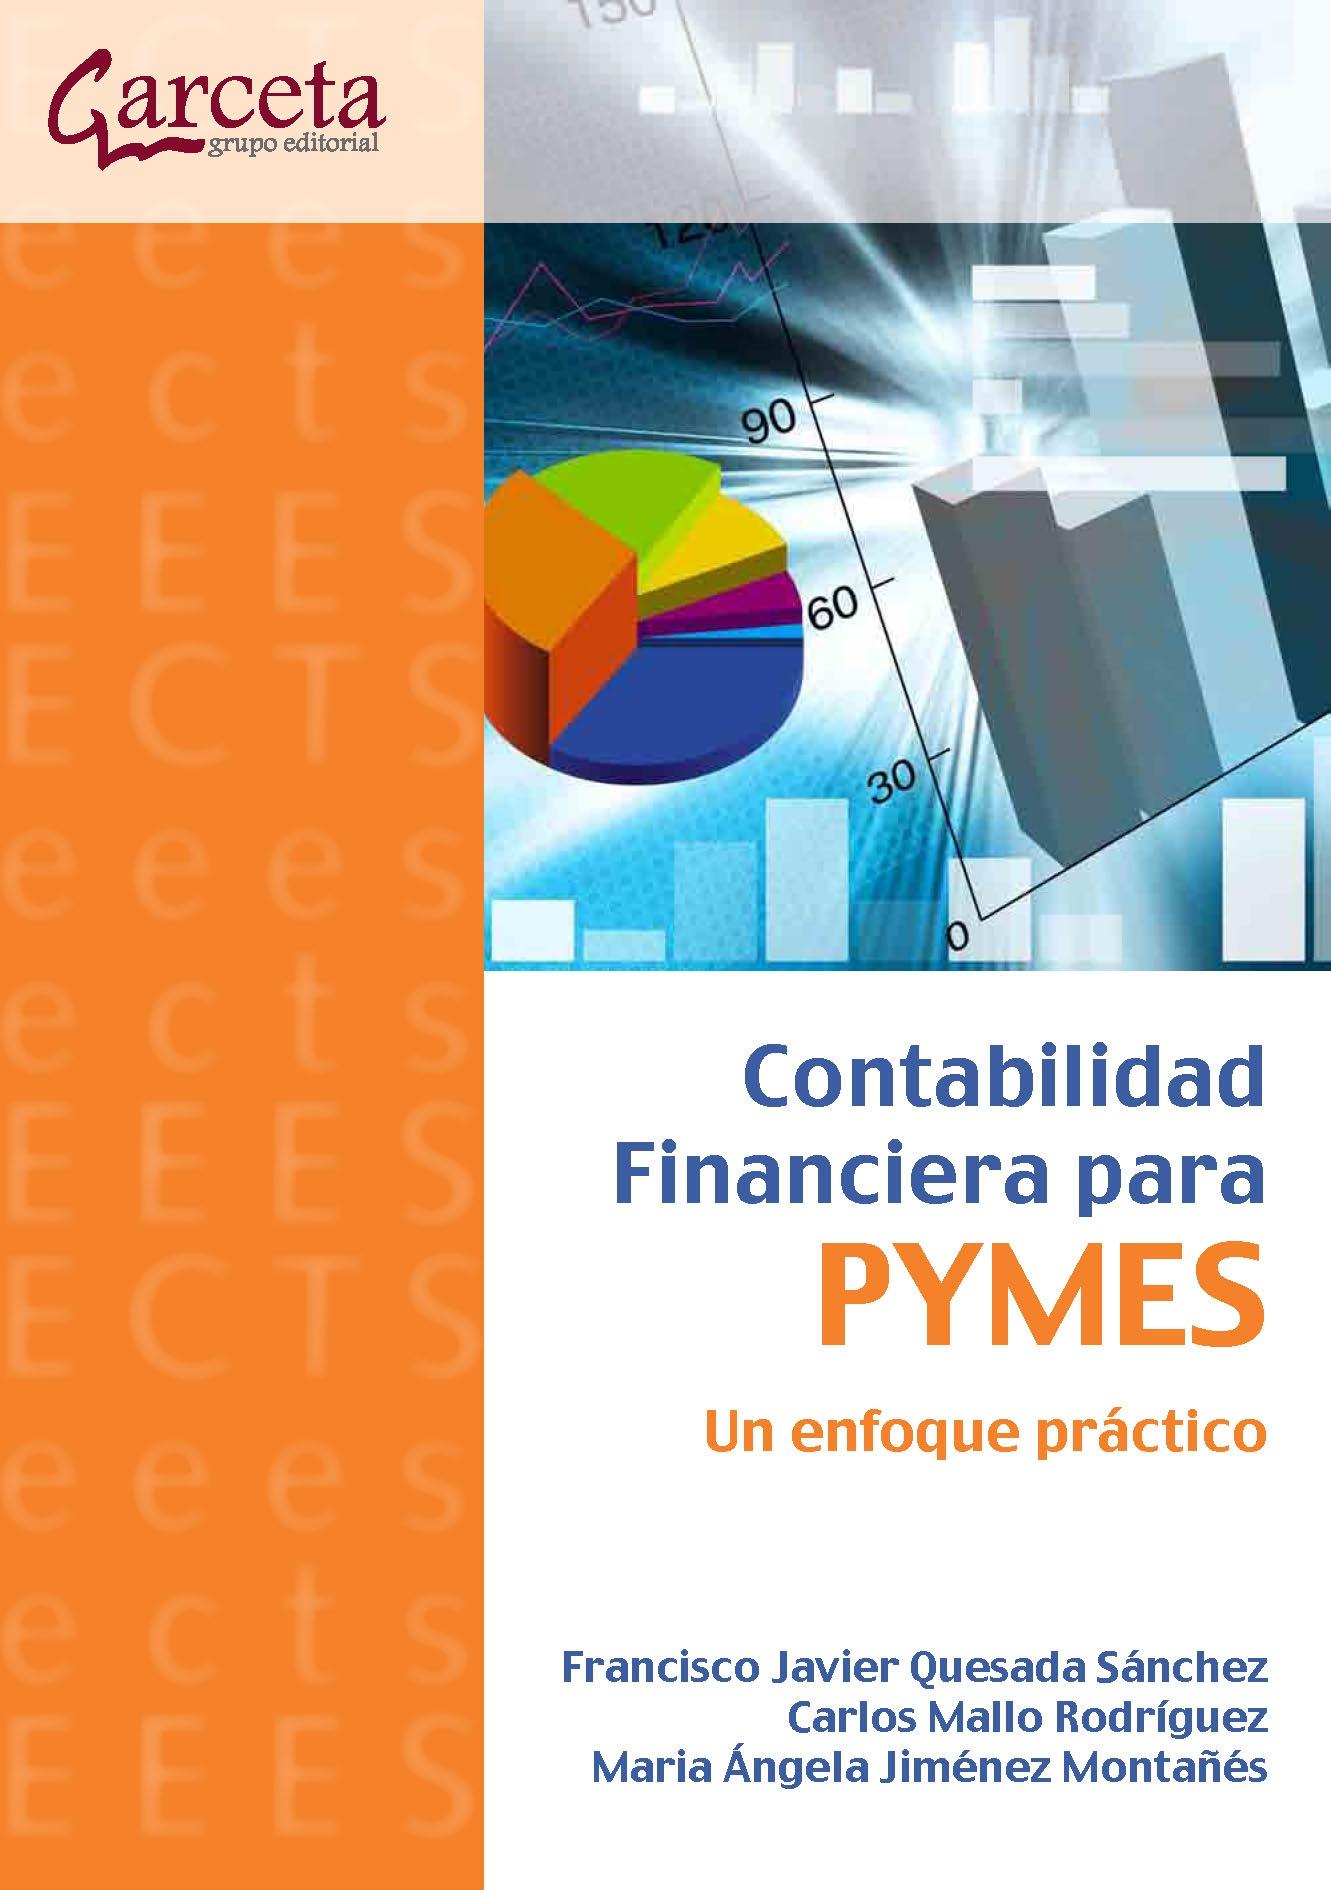 Contabilidad Financiera para Pymes "Un Enfoque Practico". Un Enfoque Practico